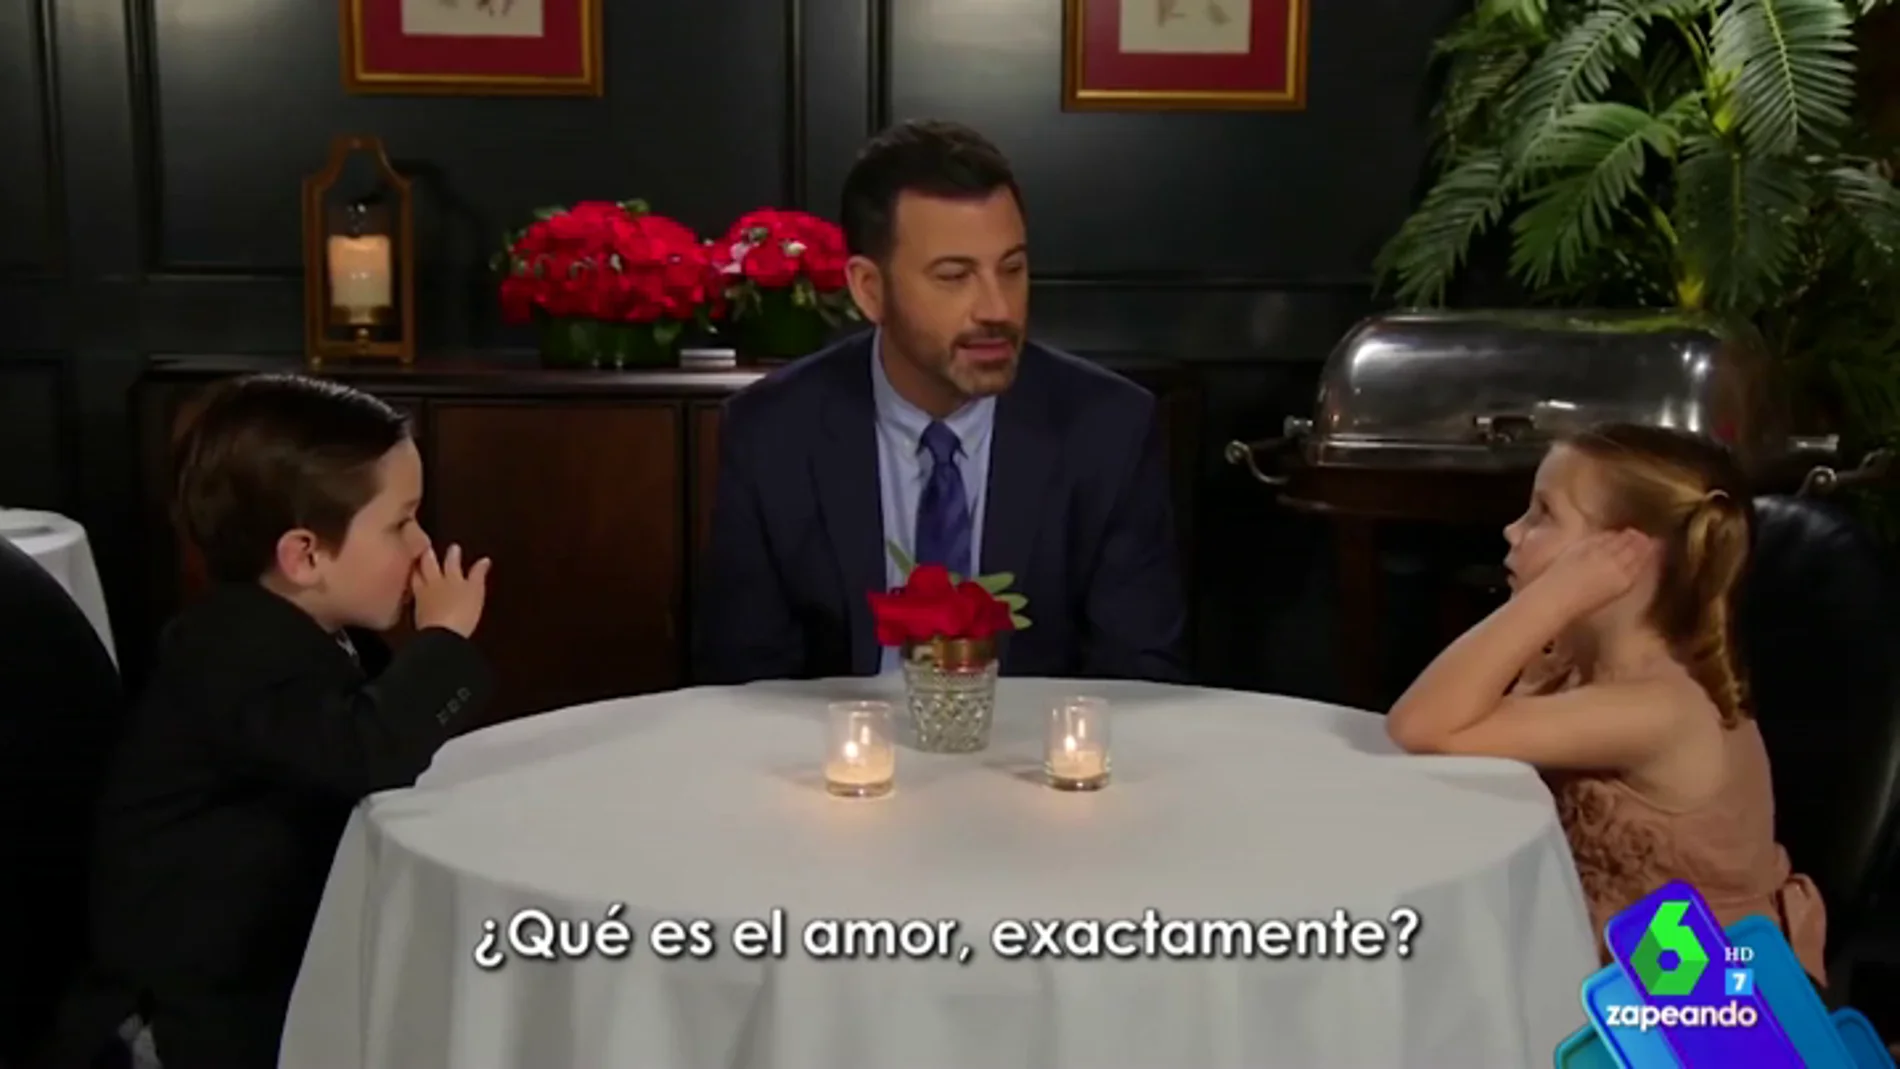  ¿Qué es el amor exactamente?: la enternecedora reflexión de dos niños en el programa de Jimmy Kimmel